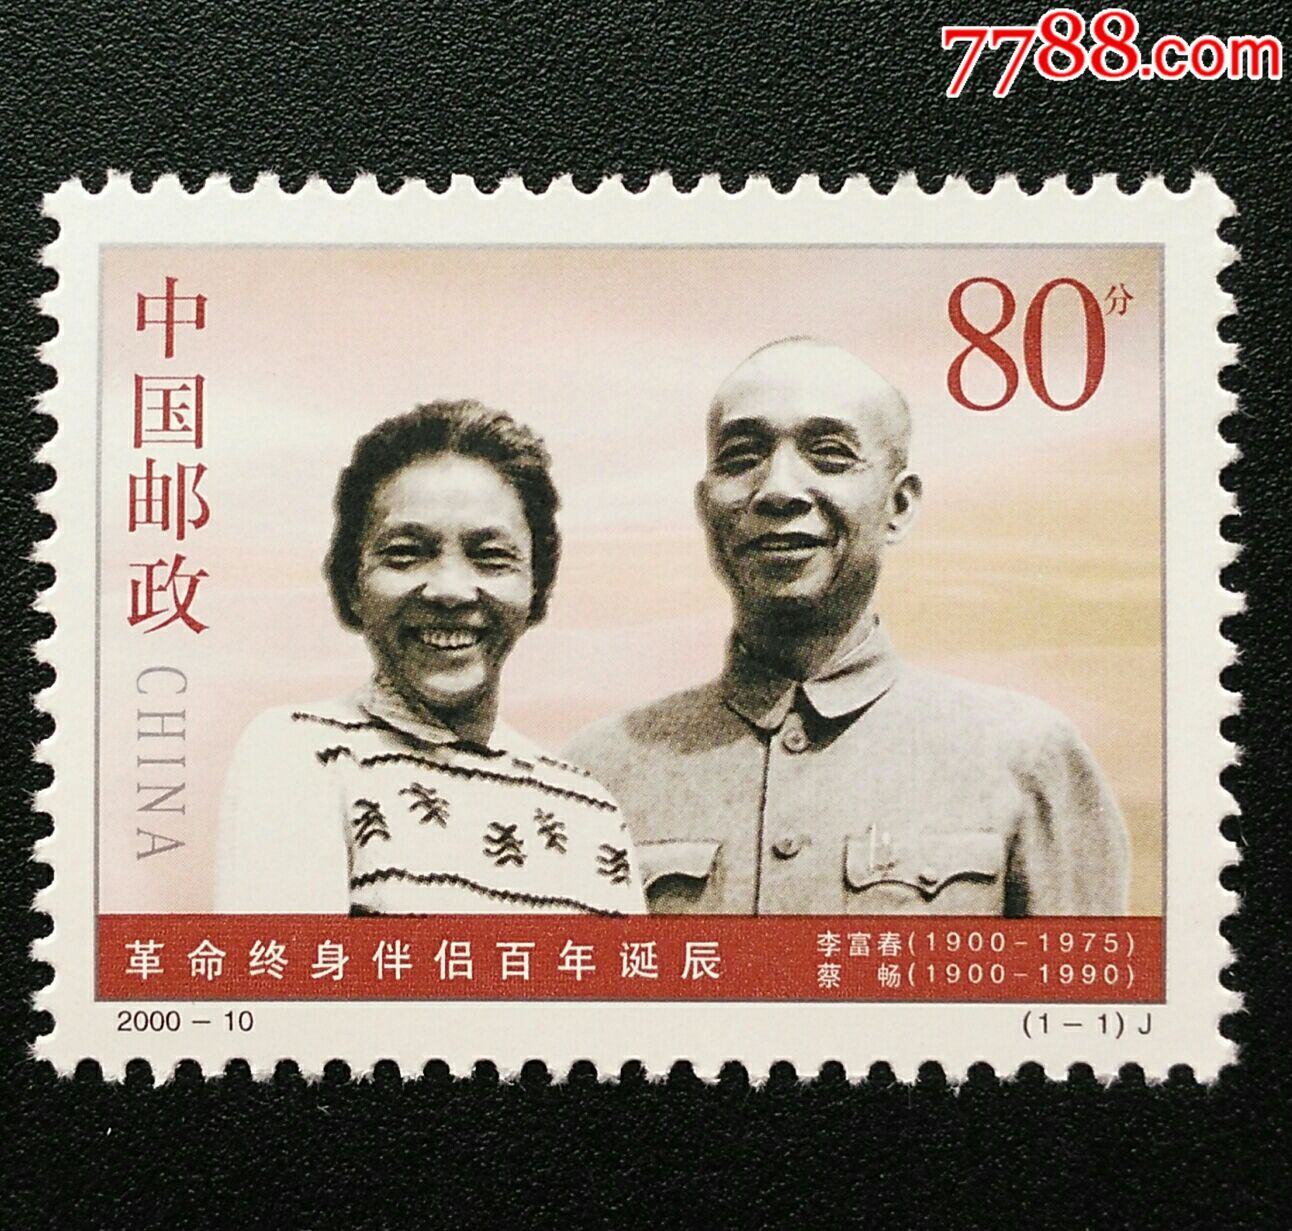 全新J纪念邮票2000-10革命终身伴侣百年诞辰